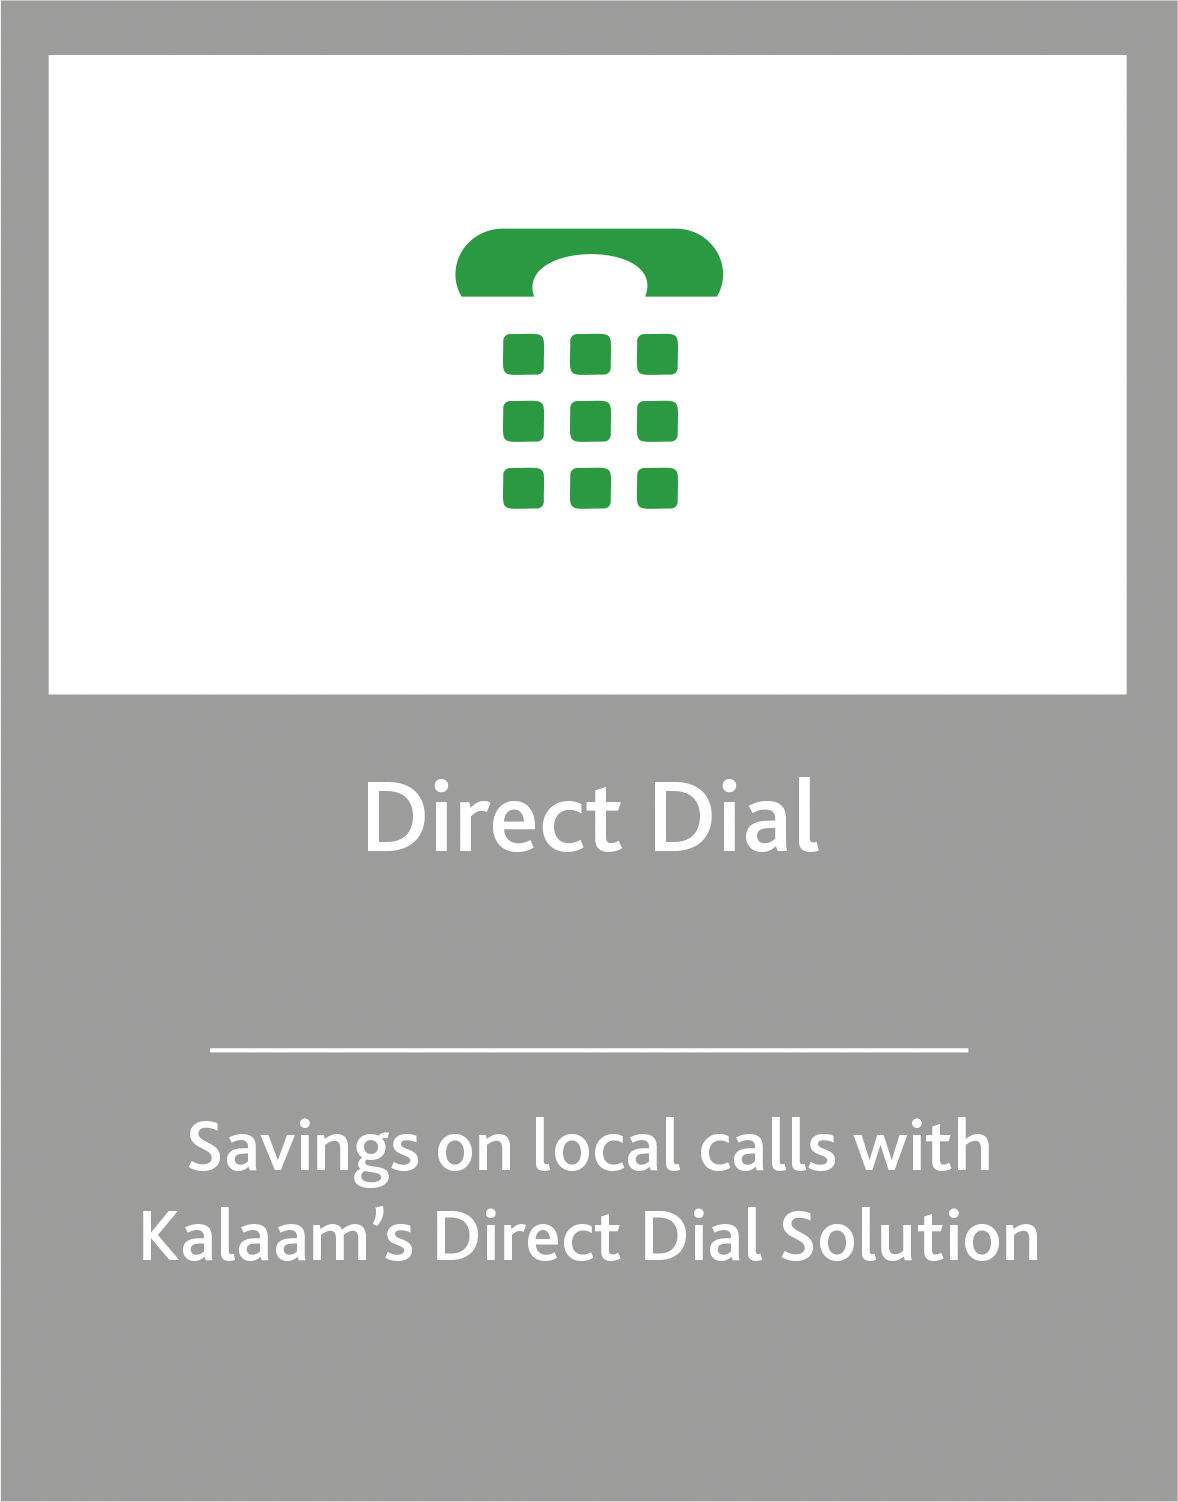 //kalaam-telecom.com/wp-content/uploads/2020/03/Direct-Dial.png